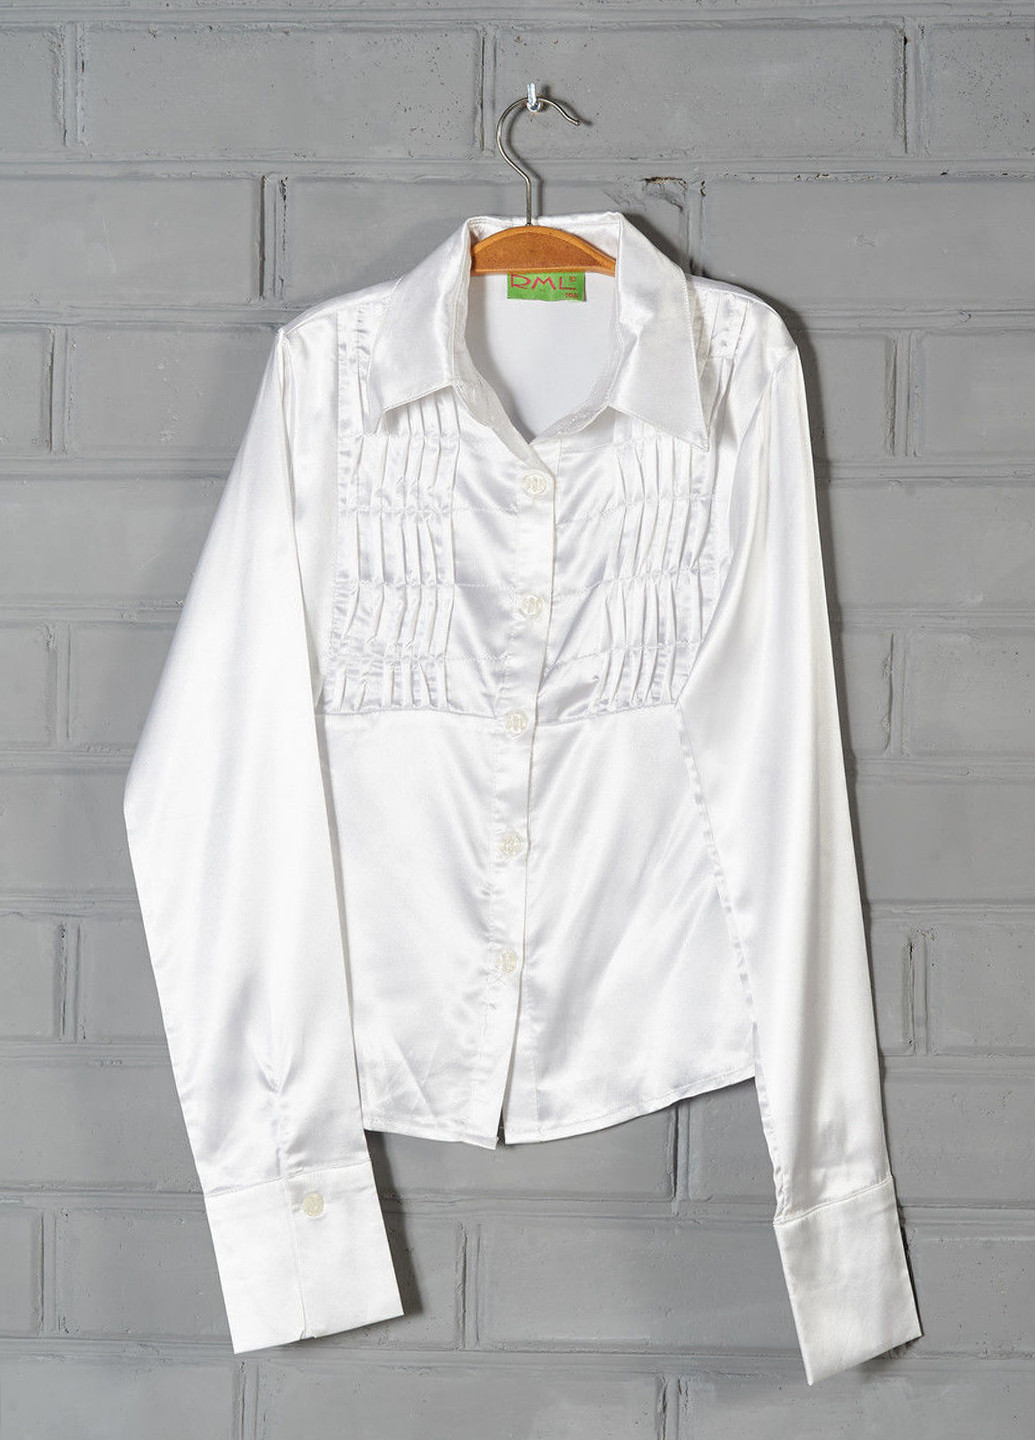 Белая блузка с длинным рукавом R.M.L демисезонная